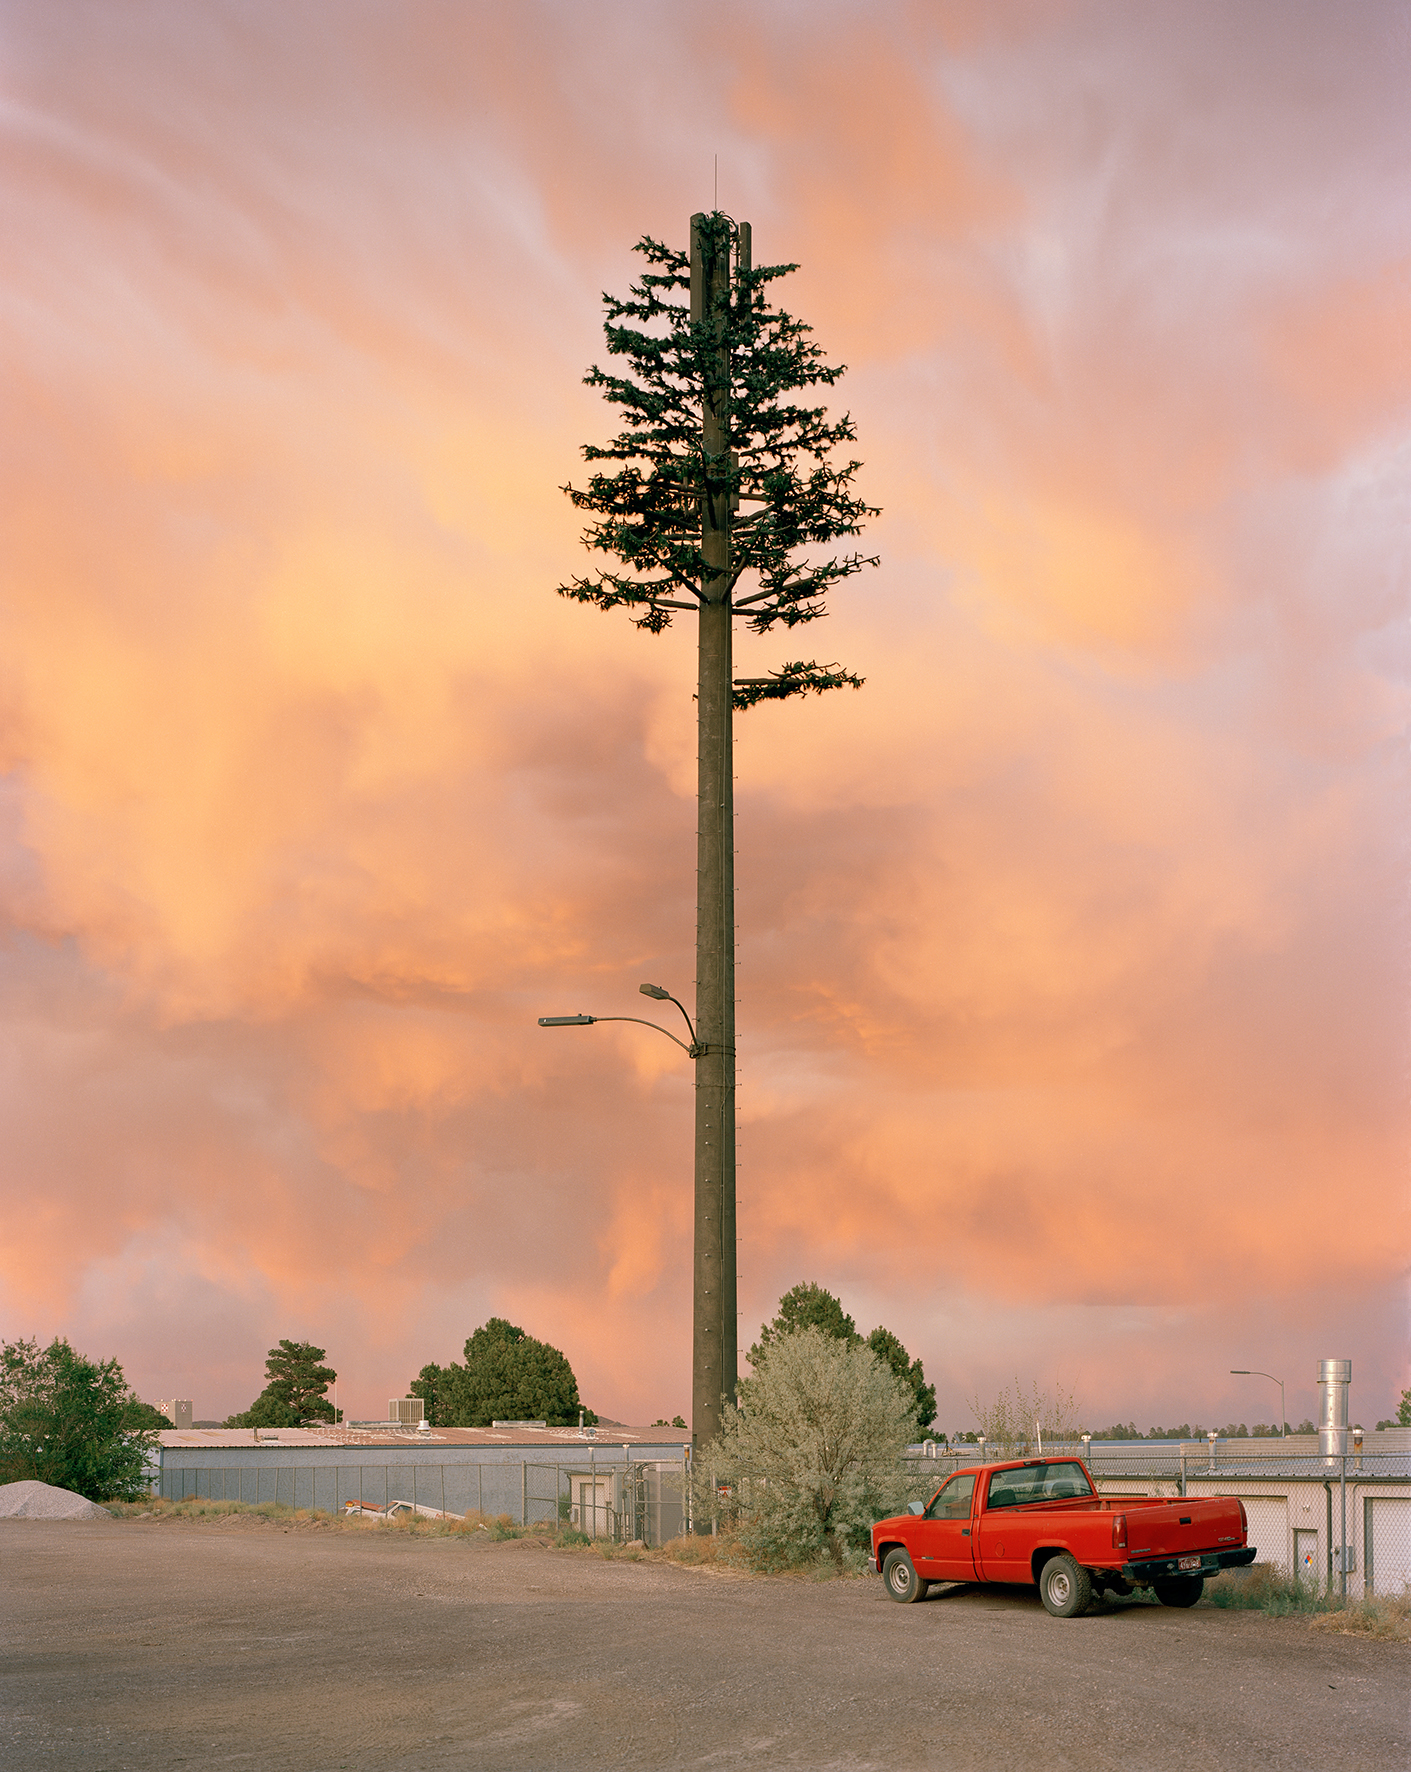 Abbildung des Werks Industrial Drive, Flagstaff, Arizona, USA von Robert Voit. Es zeigt einen Sendemast, der aussieht wie ein großer Nadelbaum.